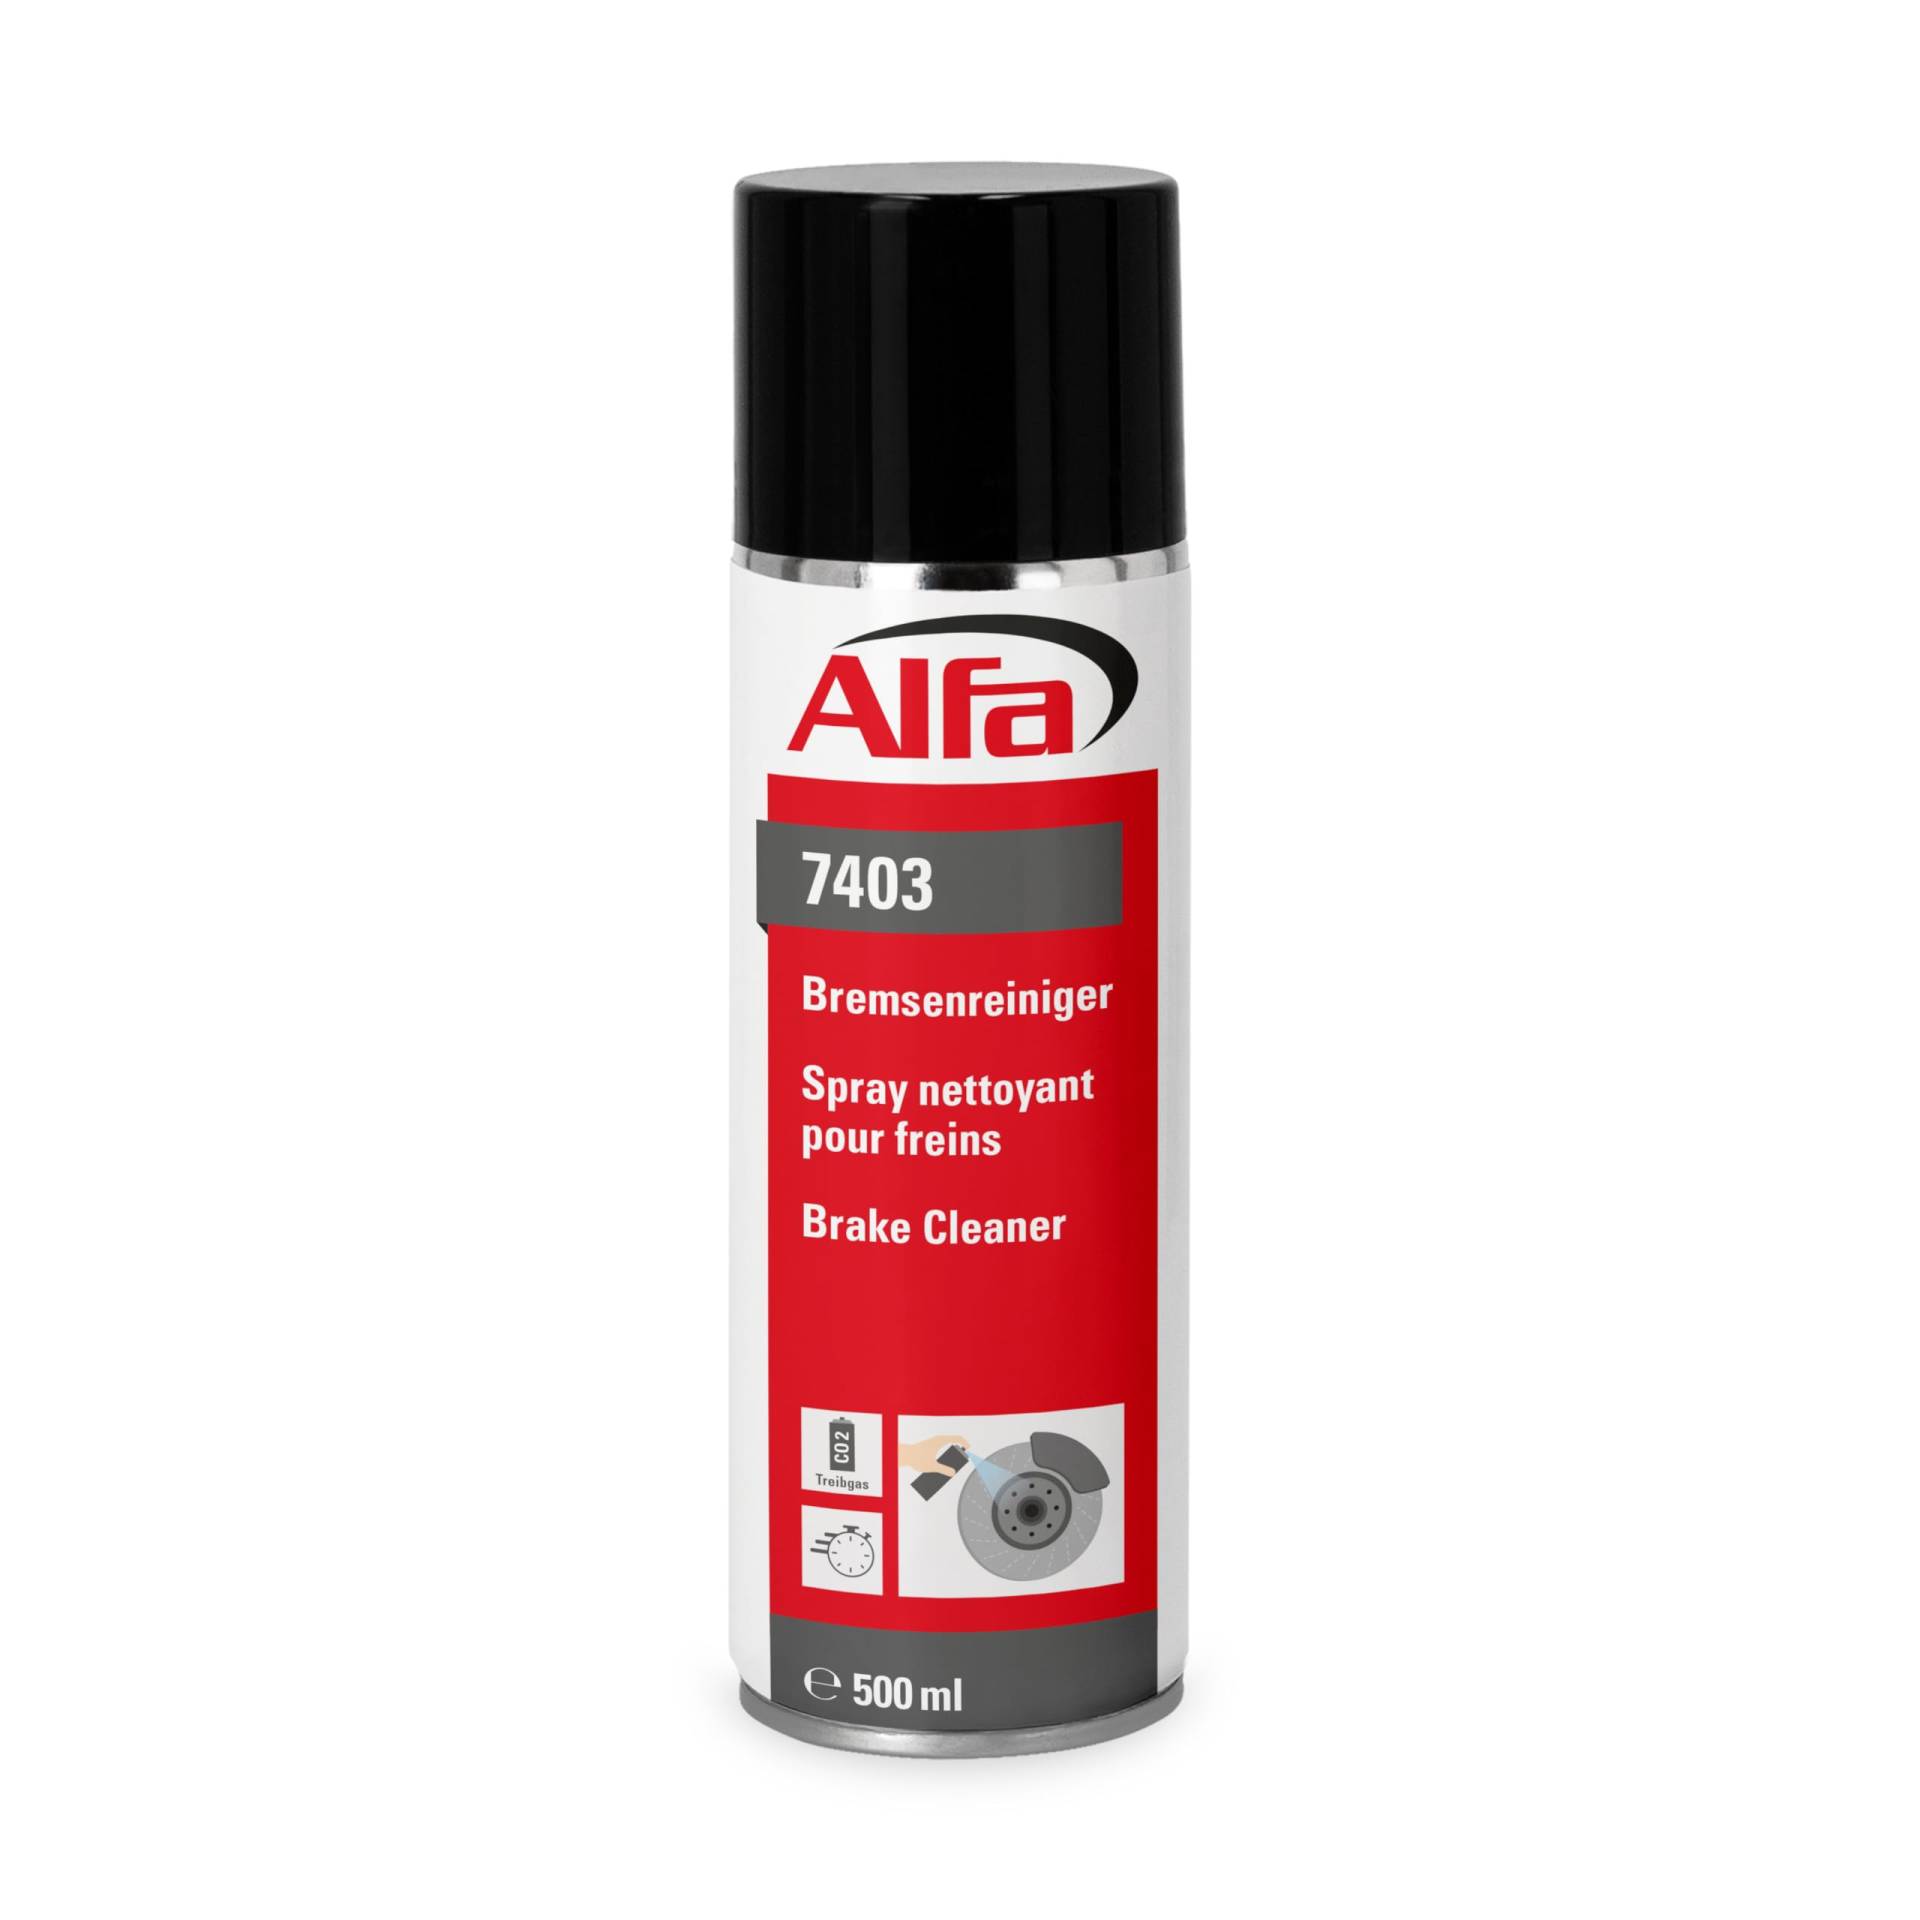 Alfa Bremsenreiniger 500 ml Profi-Qualität Premium-Reiniger Bremsen Spray kraftvoll rückstandsfrei gegen Öle Fette Harze - Made in Germany (48) von Alfa